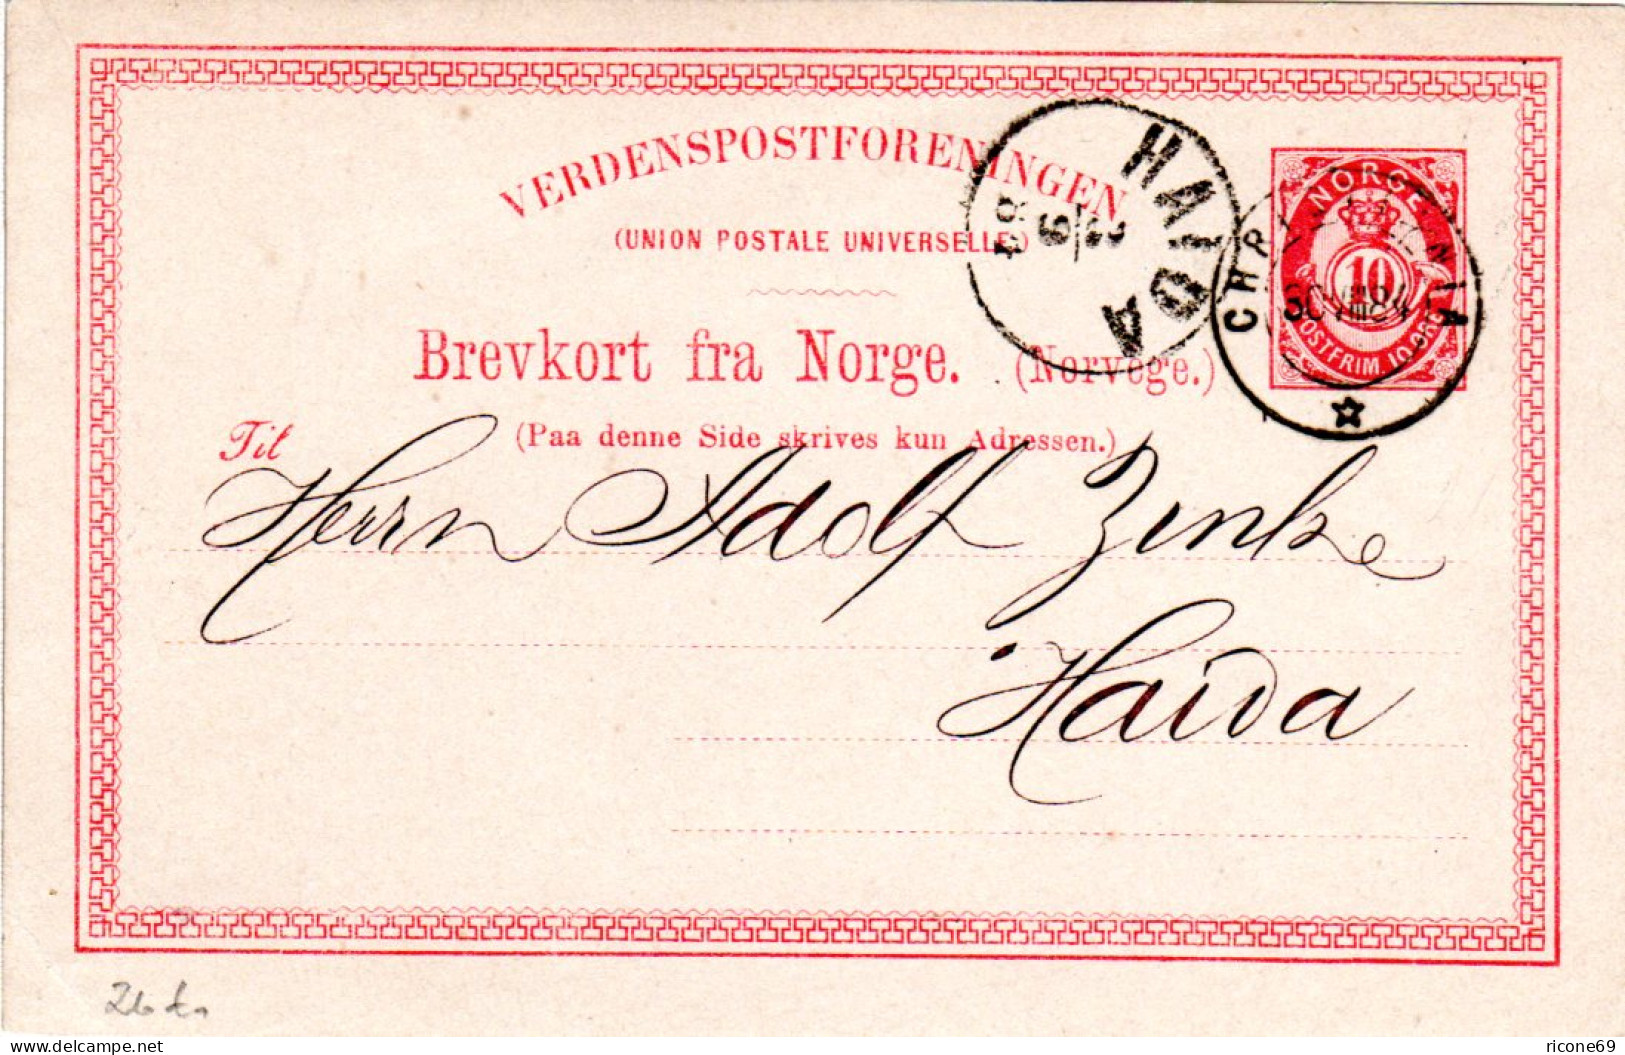 Norwegen 1884, 10 öre Ganzsache, Sauber Gebr. N. Böhmen, Österreich - Covers & Documents